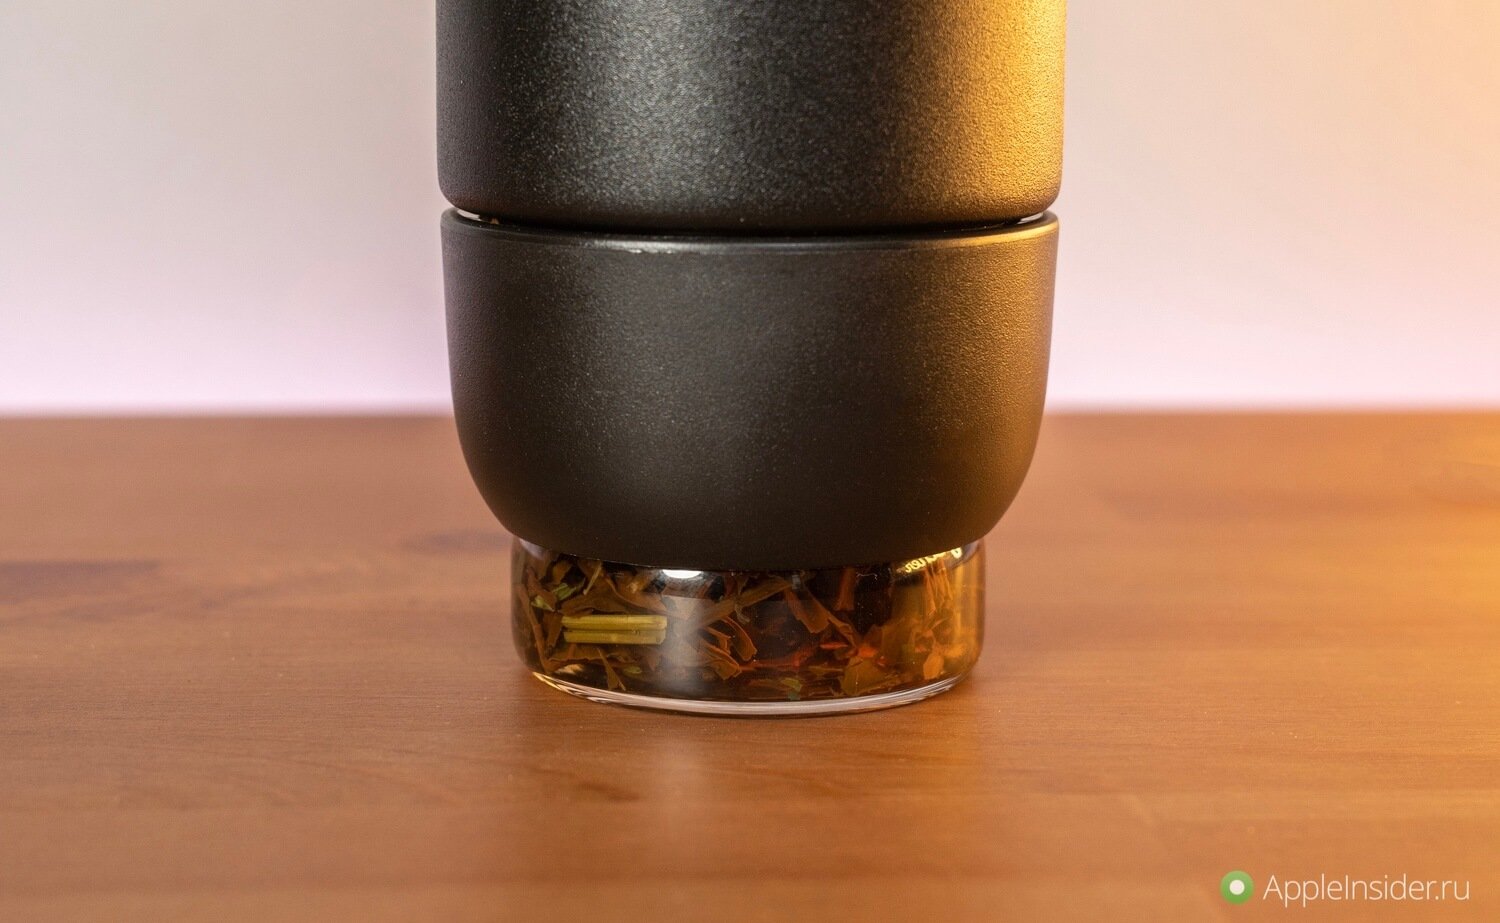 Эта посуда от MIKU позволяет готовить вафли в микроволновке, а чай сразу в термосе без чаинок. Термос для заваривания чая. Фото.